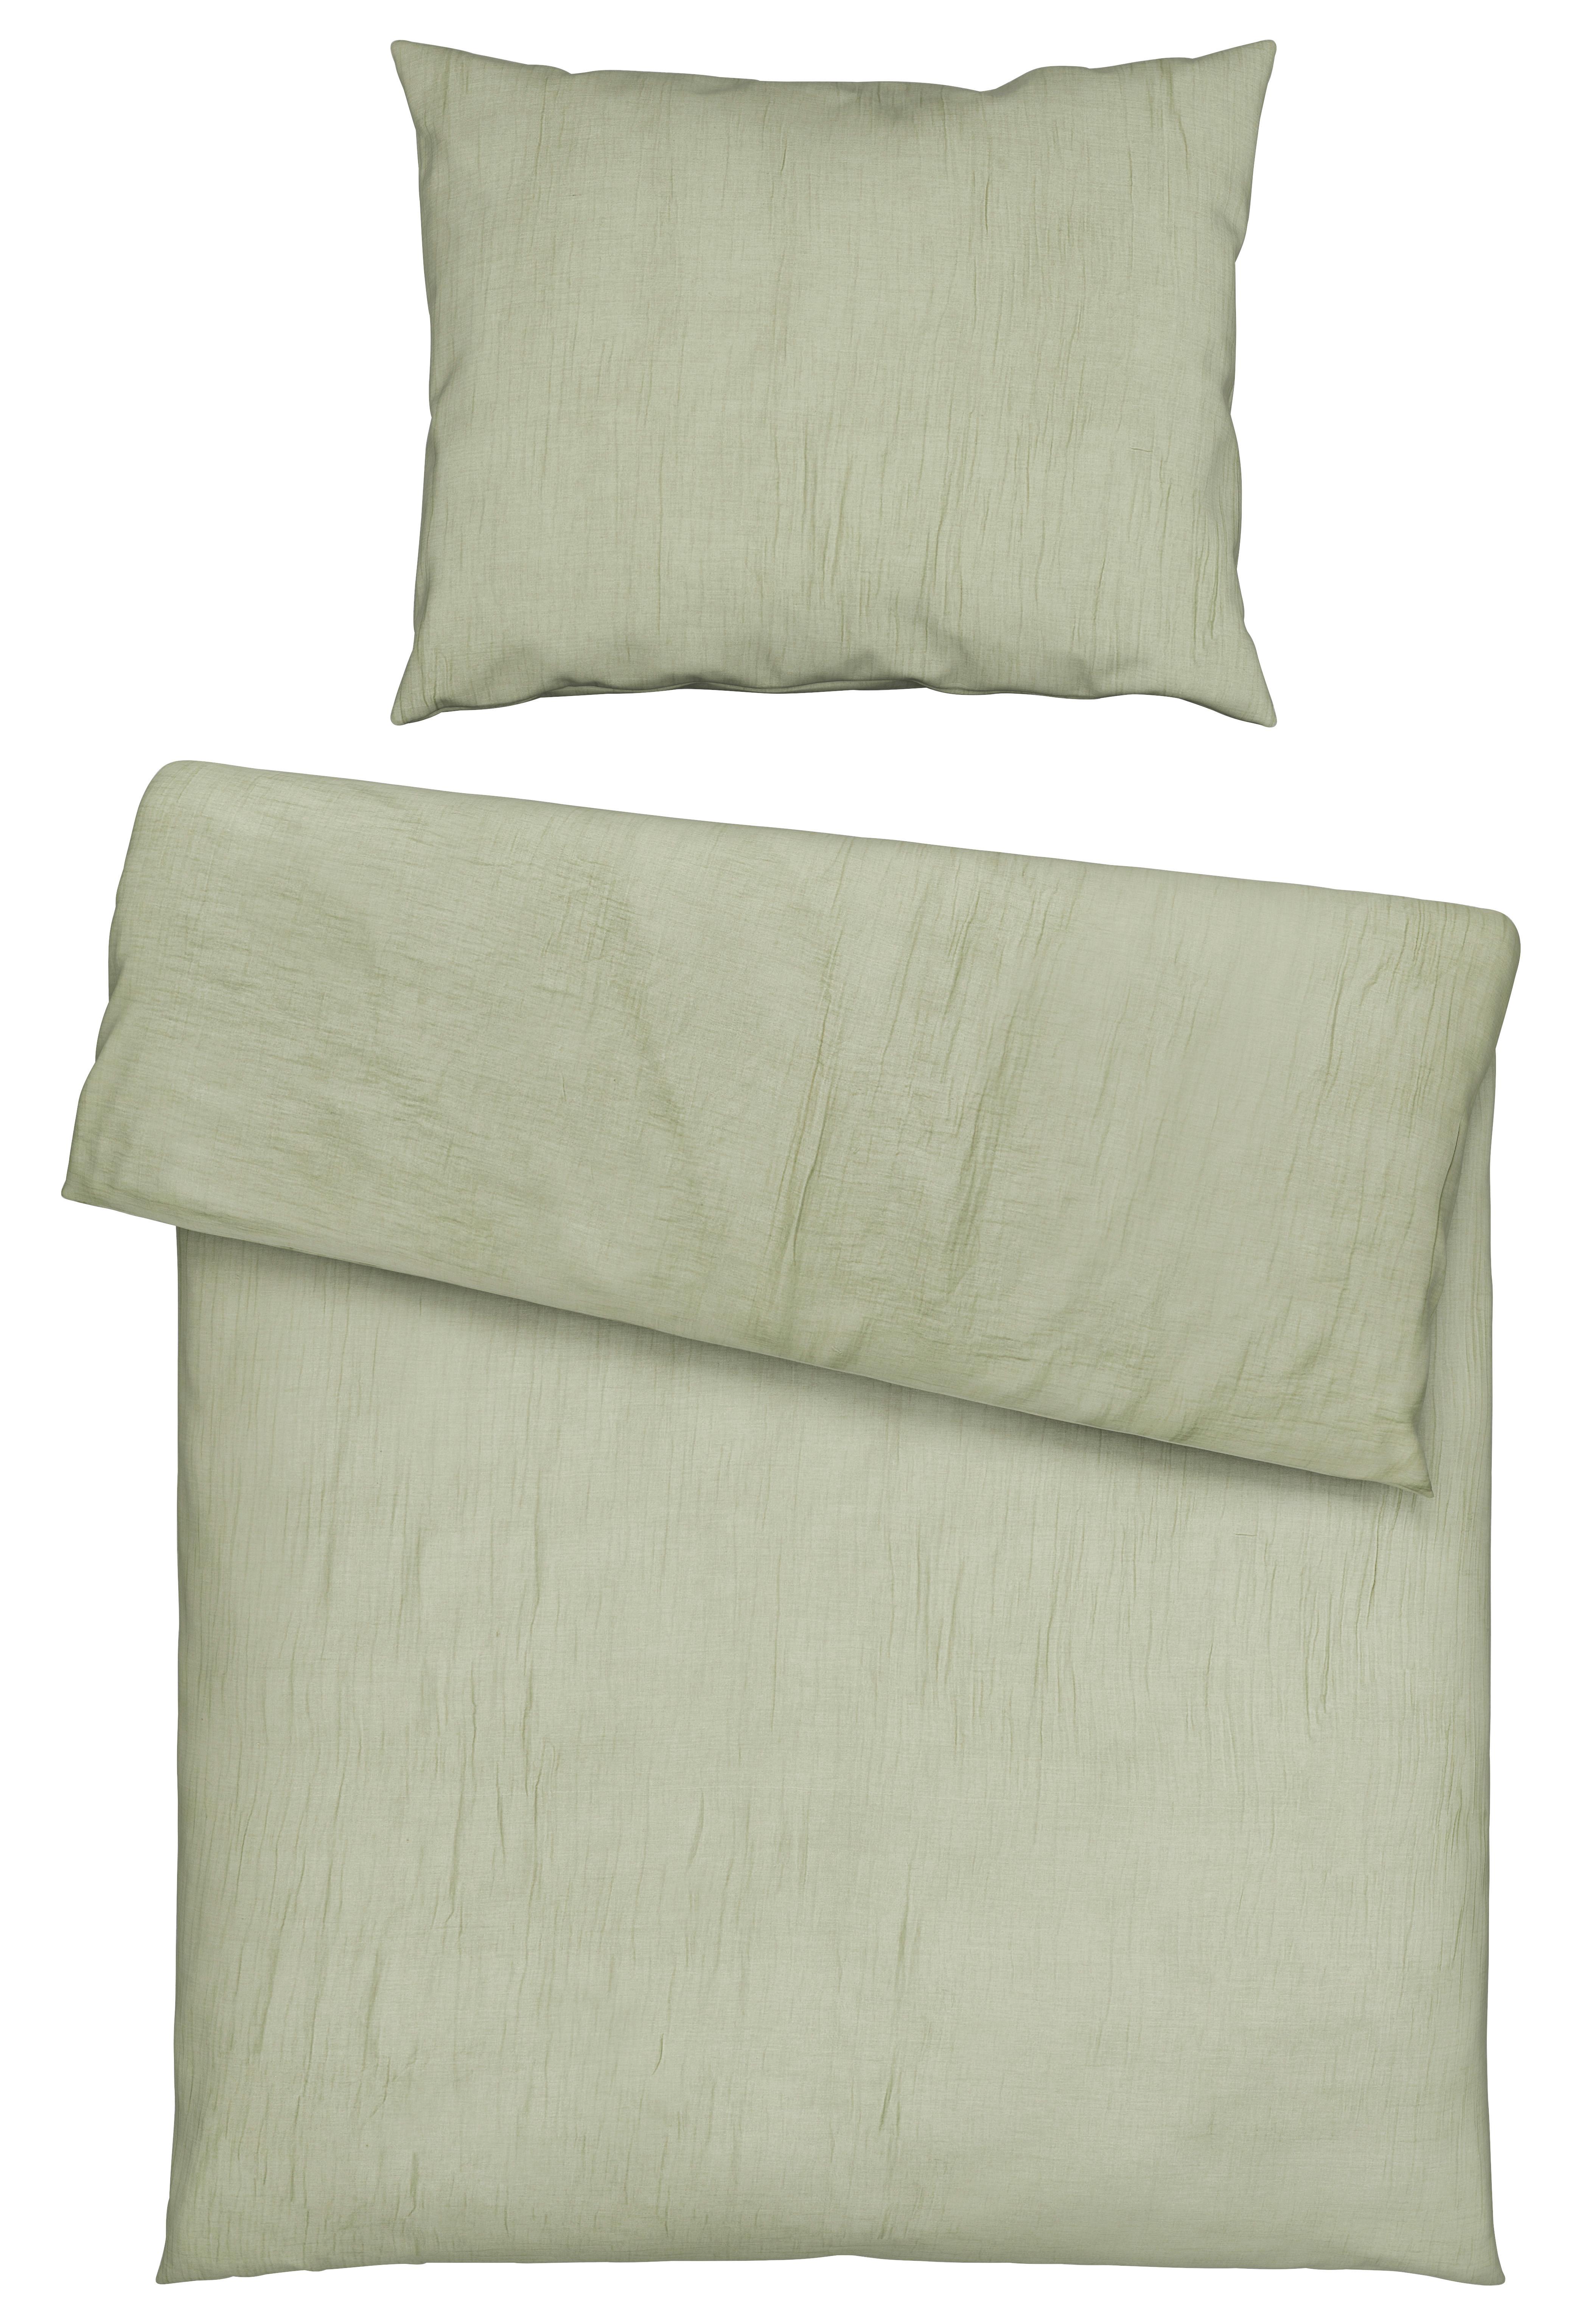 Povlečení Melania,70/90 140/200cm,zelená - zelená, Lifestyle, textil (140/200cm) - Modern Living